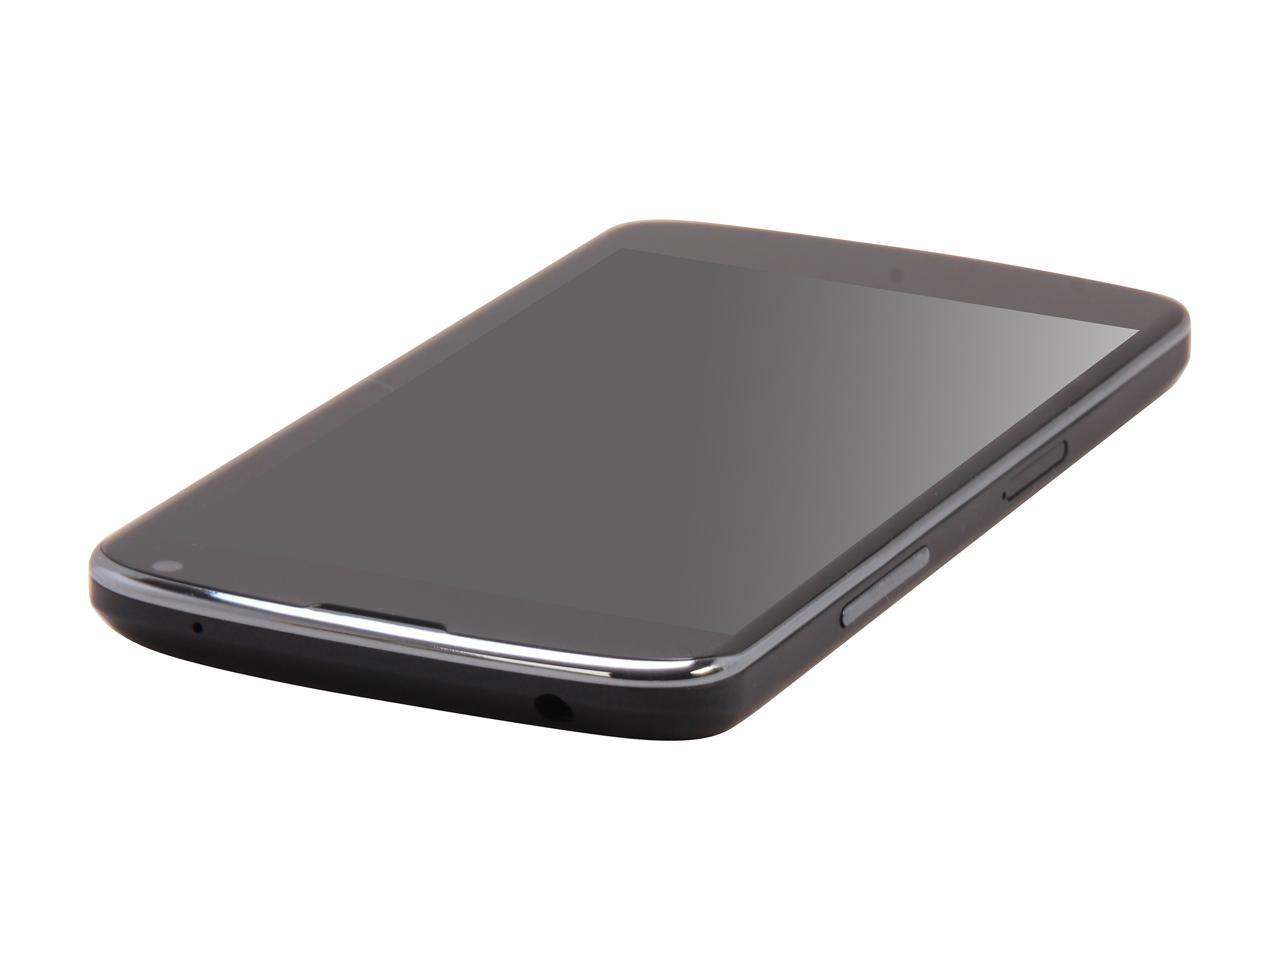 Konka SP9 4G Smartphone - Black | BIG W